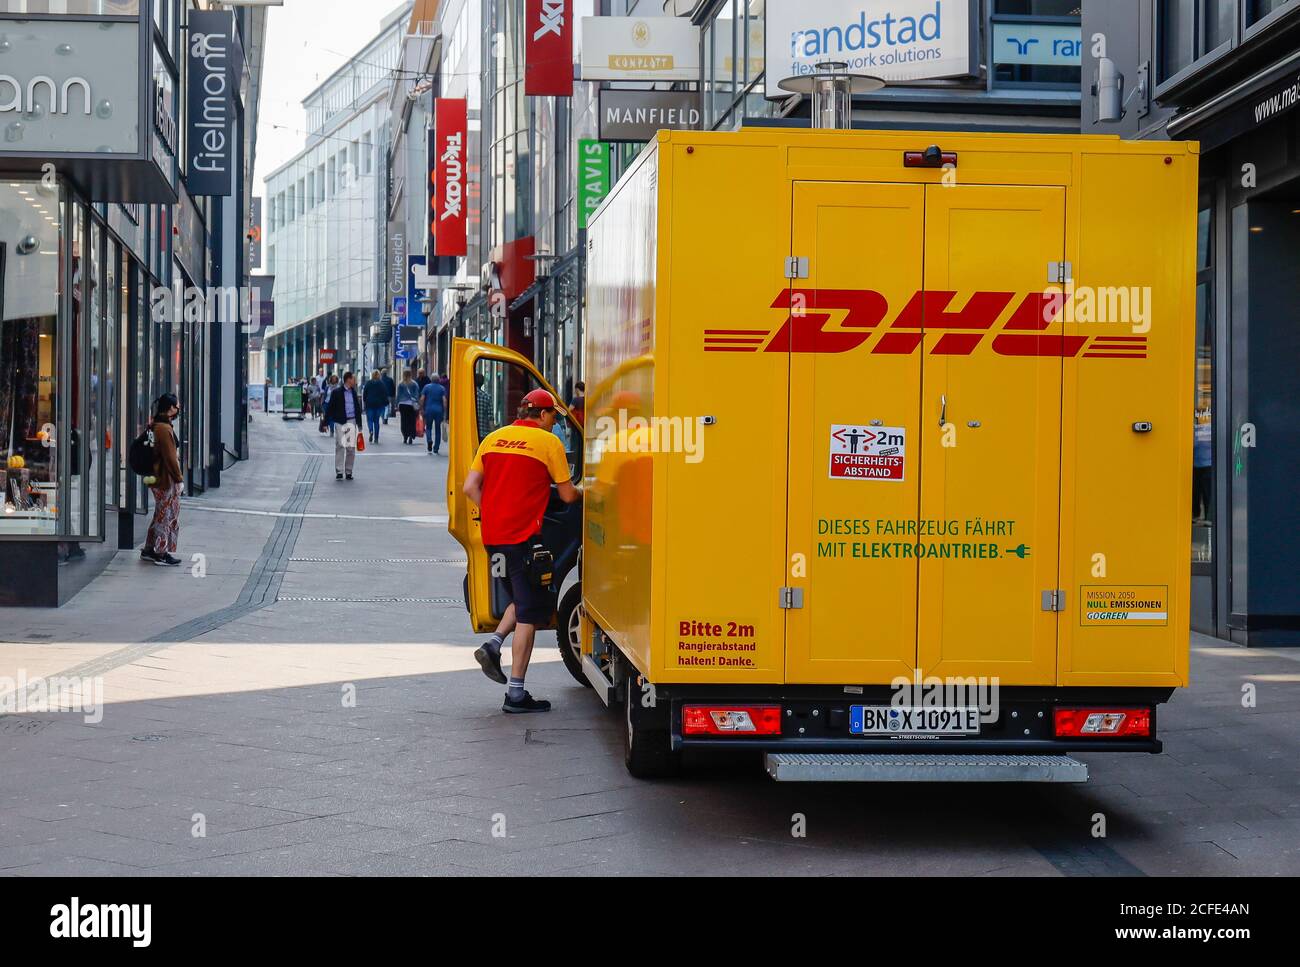 Colis DHL dans la zone piétonne en face des boutiques et magasins, commerce en ligne et à l'arrêt, Essen, région de la Ruhr, Rhénanie-du-Nord-Westphalie, Allemagne Banque D'Images